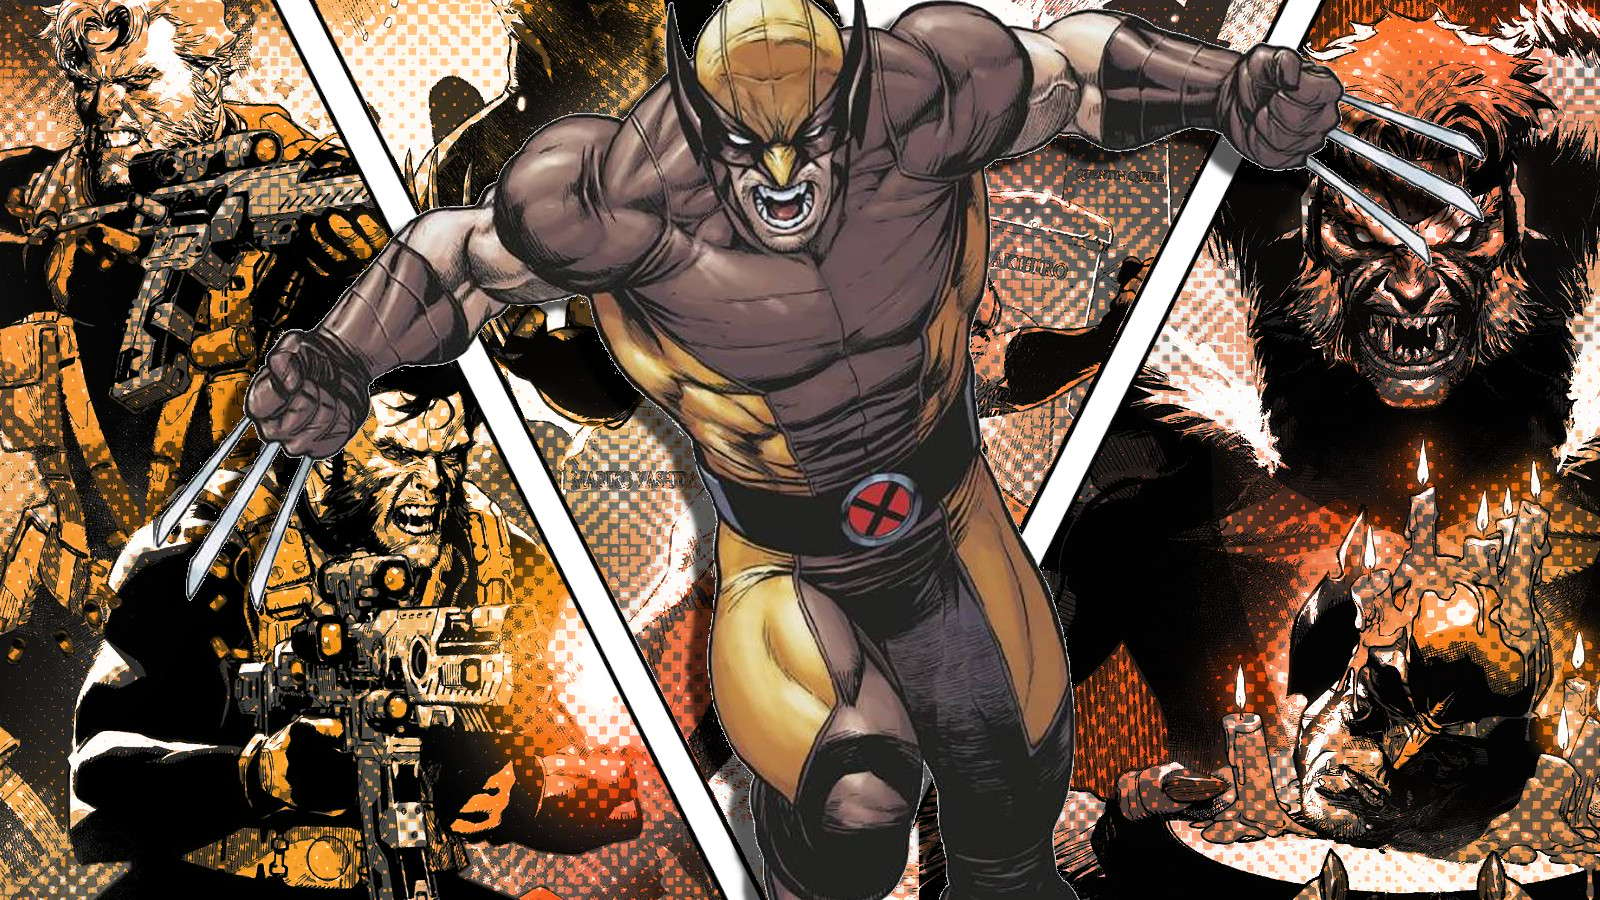 Sabretooth War: Wolverine'in şimdiye kadarki en kanlı hikayesinde şu ana kadar ölen herkes